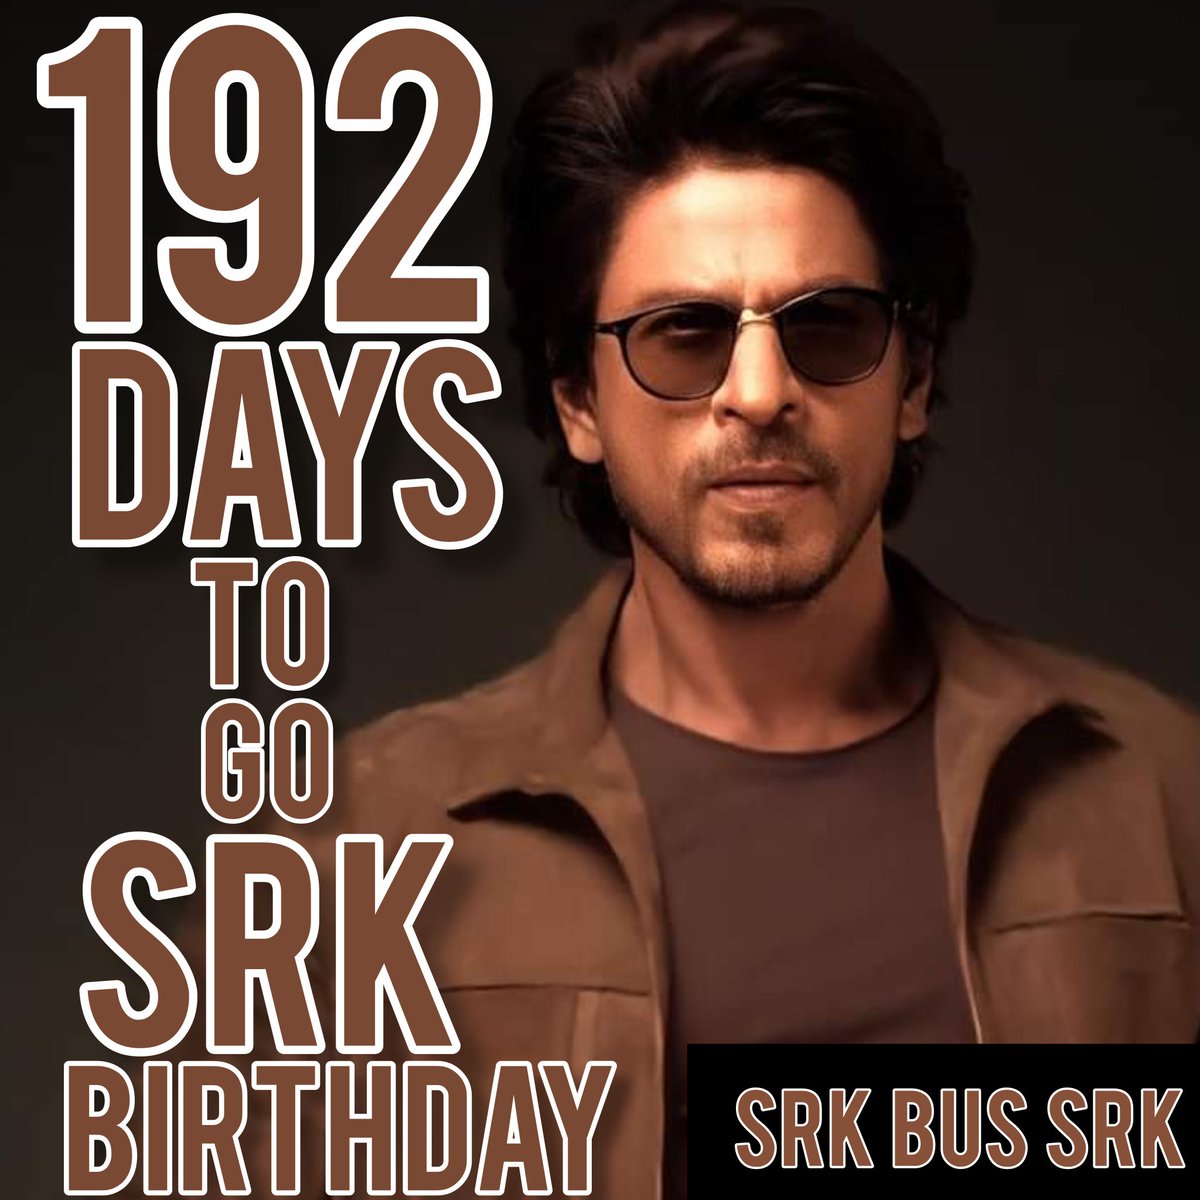 COUNTDOWN IS GOING DAYS ARE COMING CLOSE JUST 192 DAYS TO GO FOR BIGGEST DAY OF SRK BUS SRK @iamsrk @KarunaBadwal @pooja_dadlani @khyatimadaan @BilalS158 @RedChilliesEnt @kolkata_srk @TeamSRKWarriors @SANDEEP06667629 #AskSRK #srkbussrk